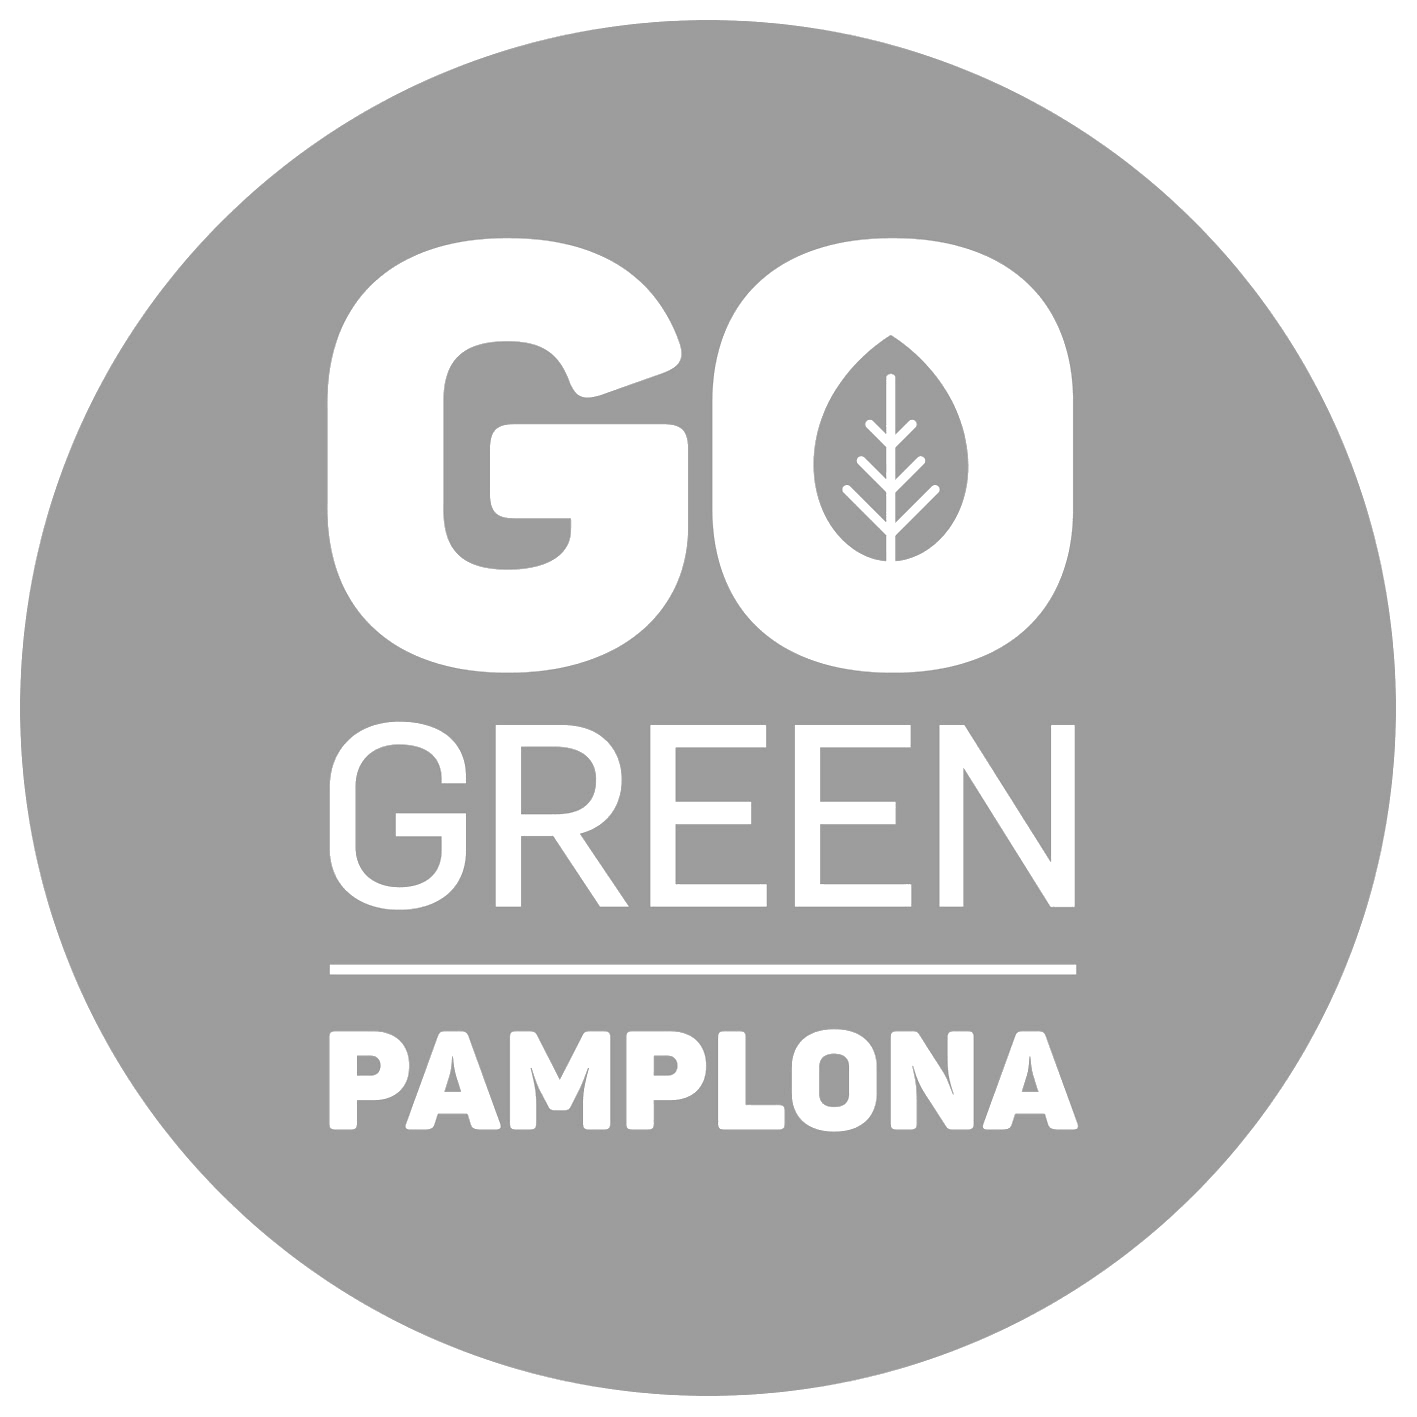 Logotipo Ayuntamiento de Pamplona